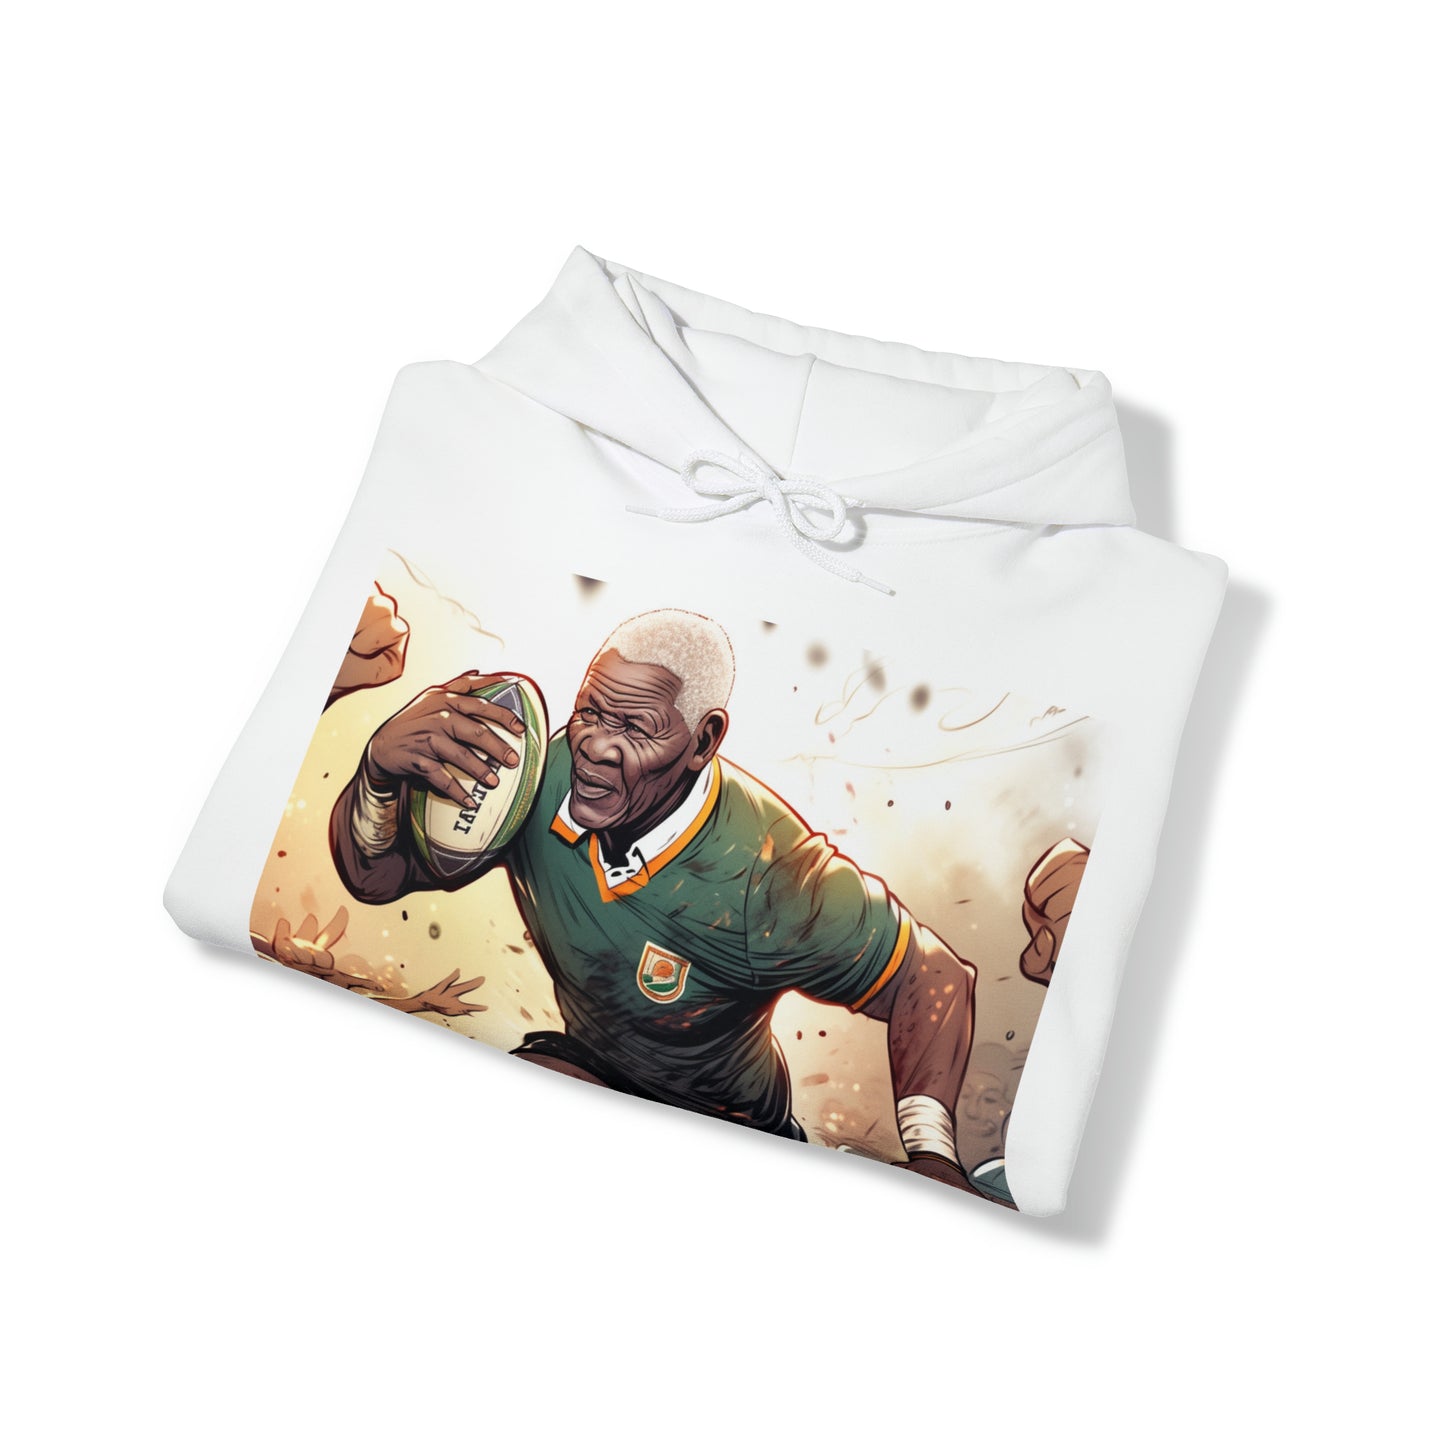 Rugby Mandela - light hoodies